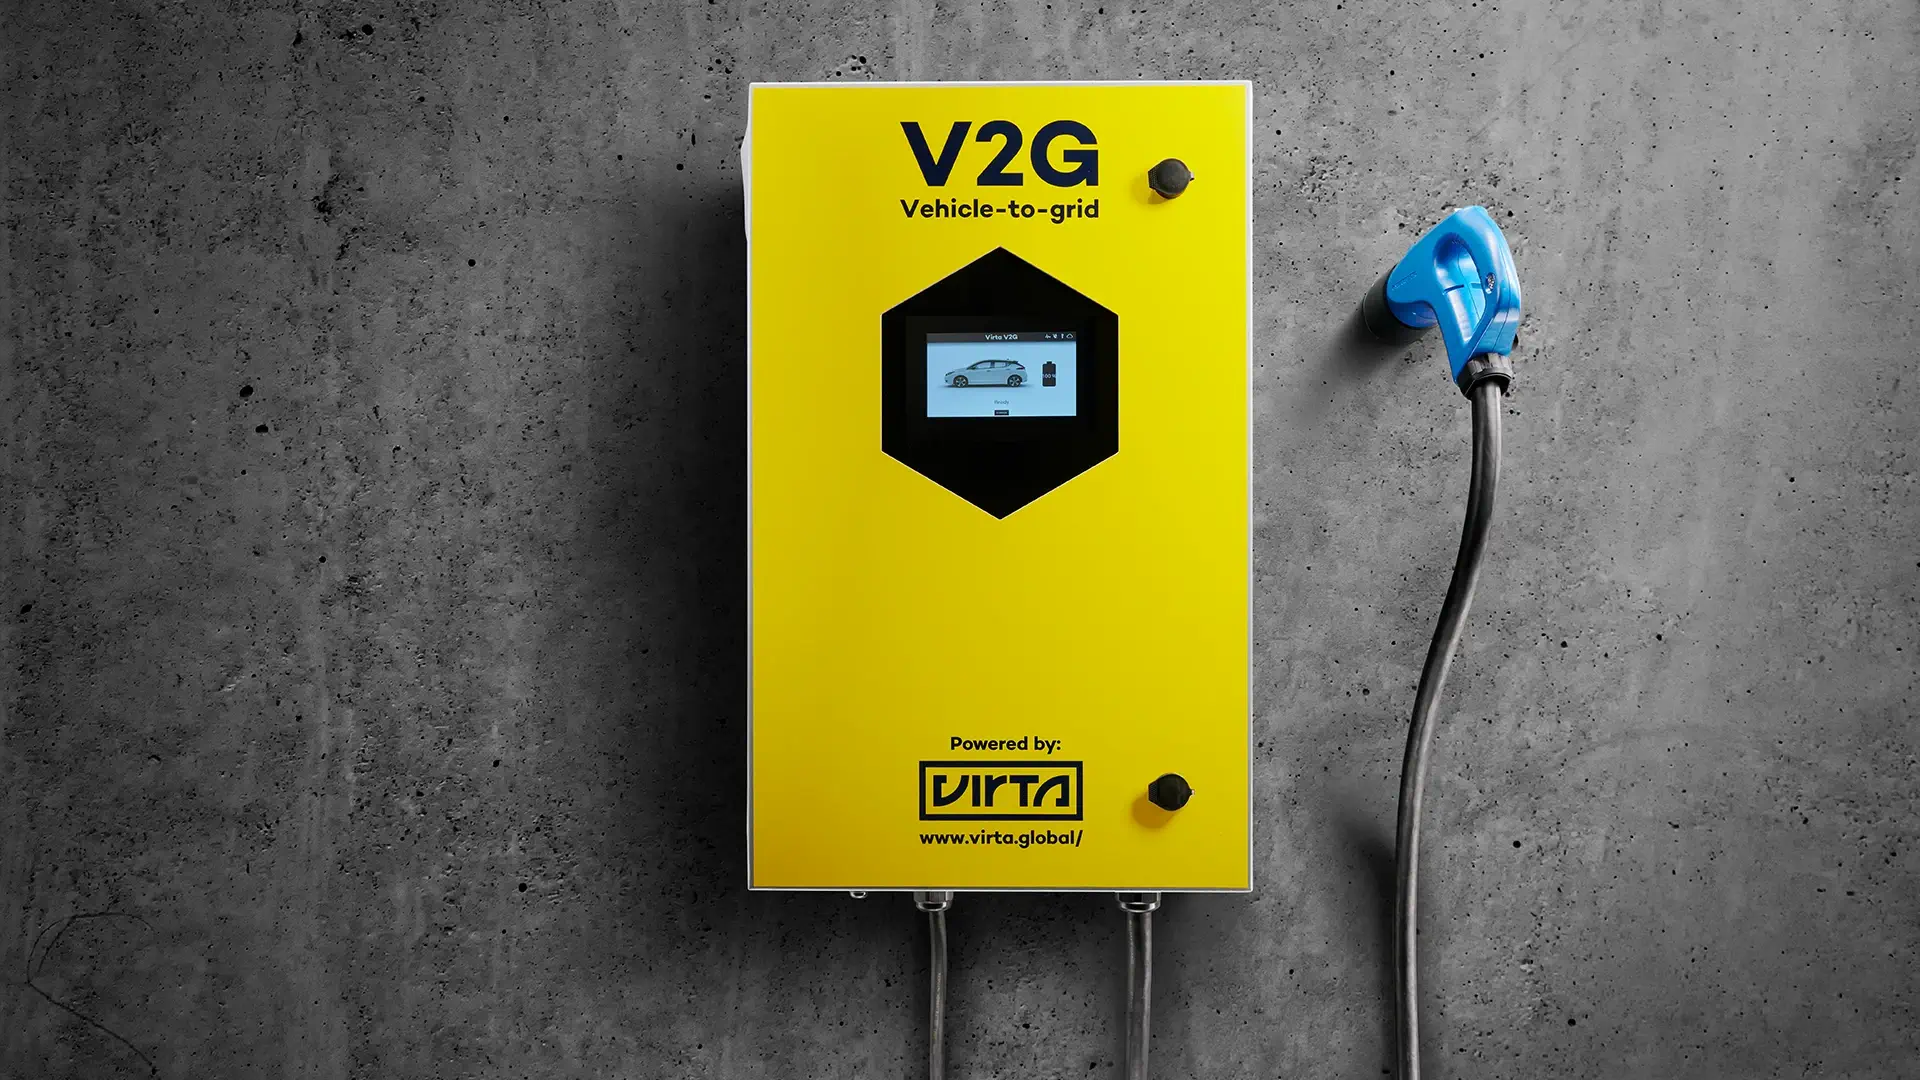 Comment le V2G (Vehicle-to-grid) va tout changer